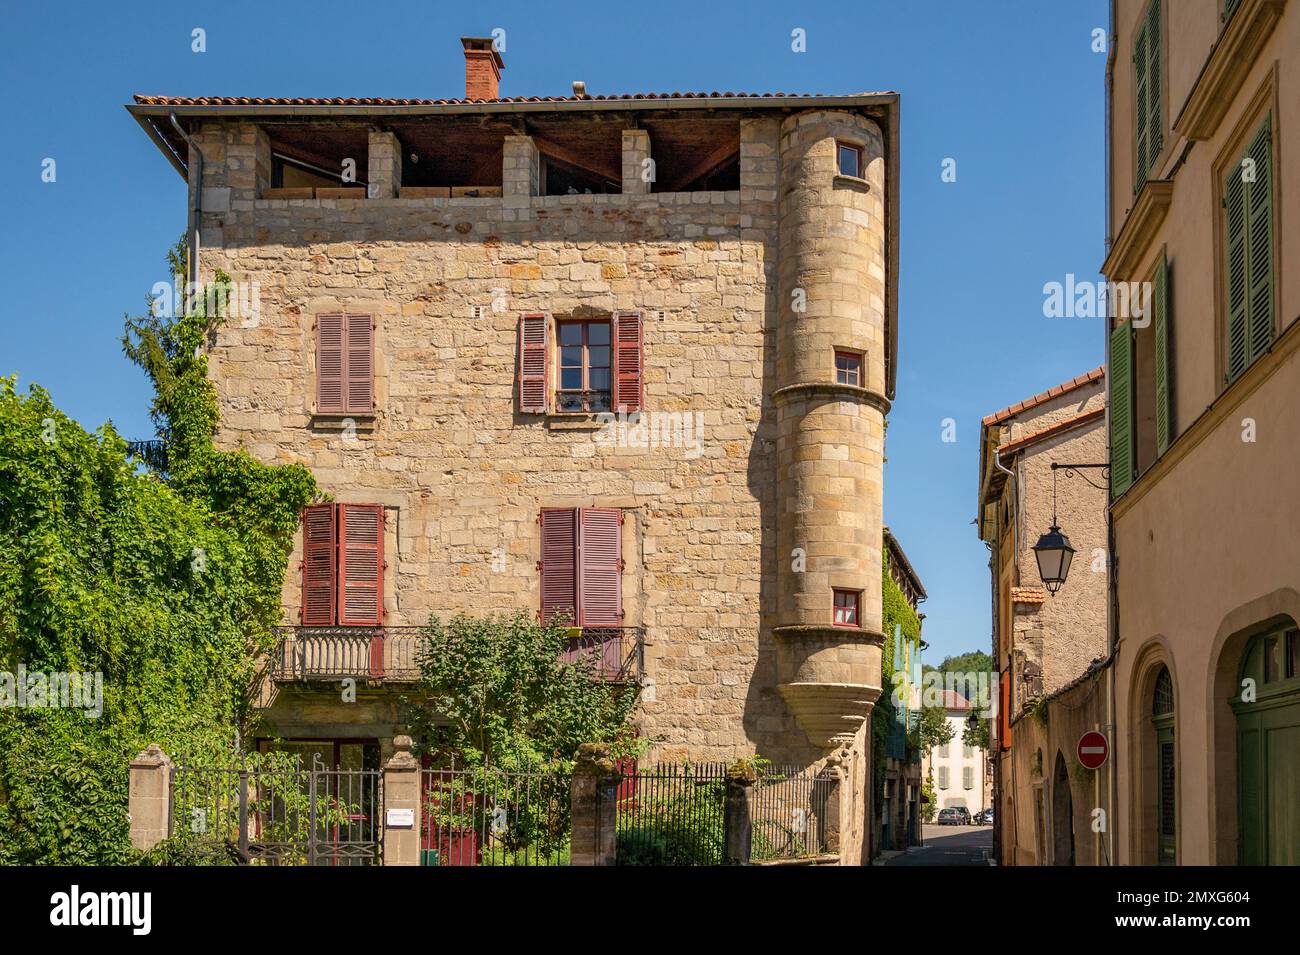 Maison de ville traditionnelle dans le vieux centre de Figeac, sud de la France Banque D'Images